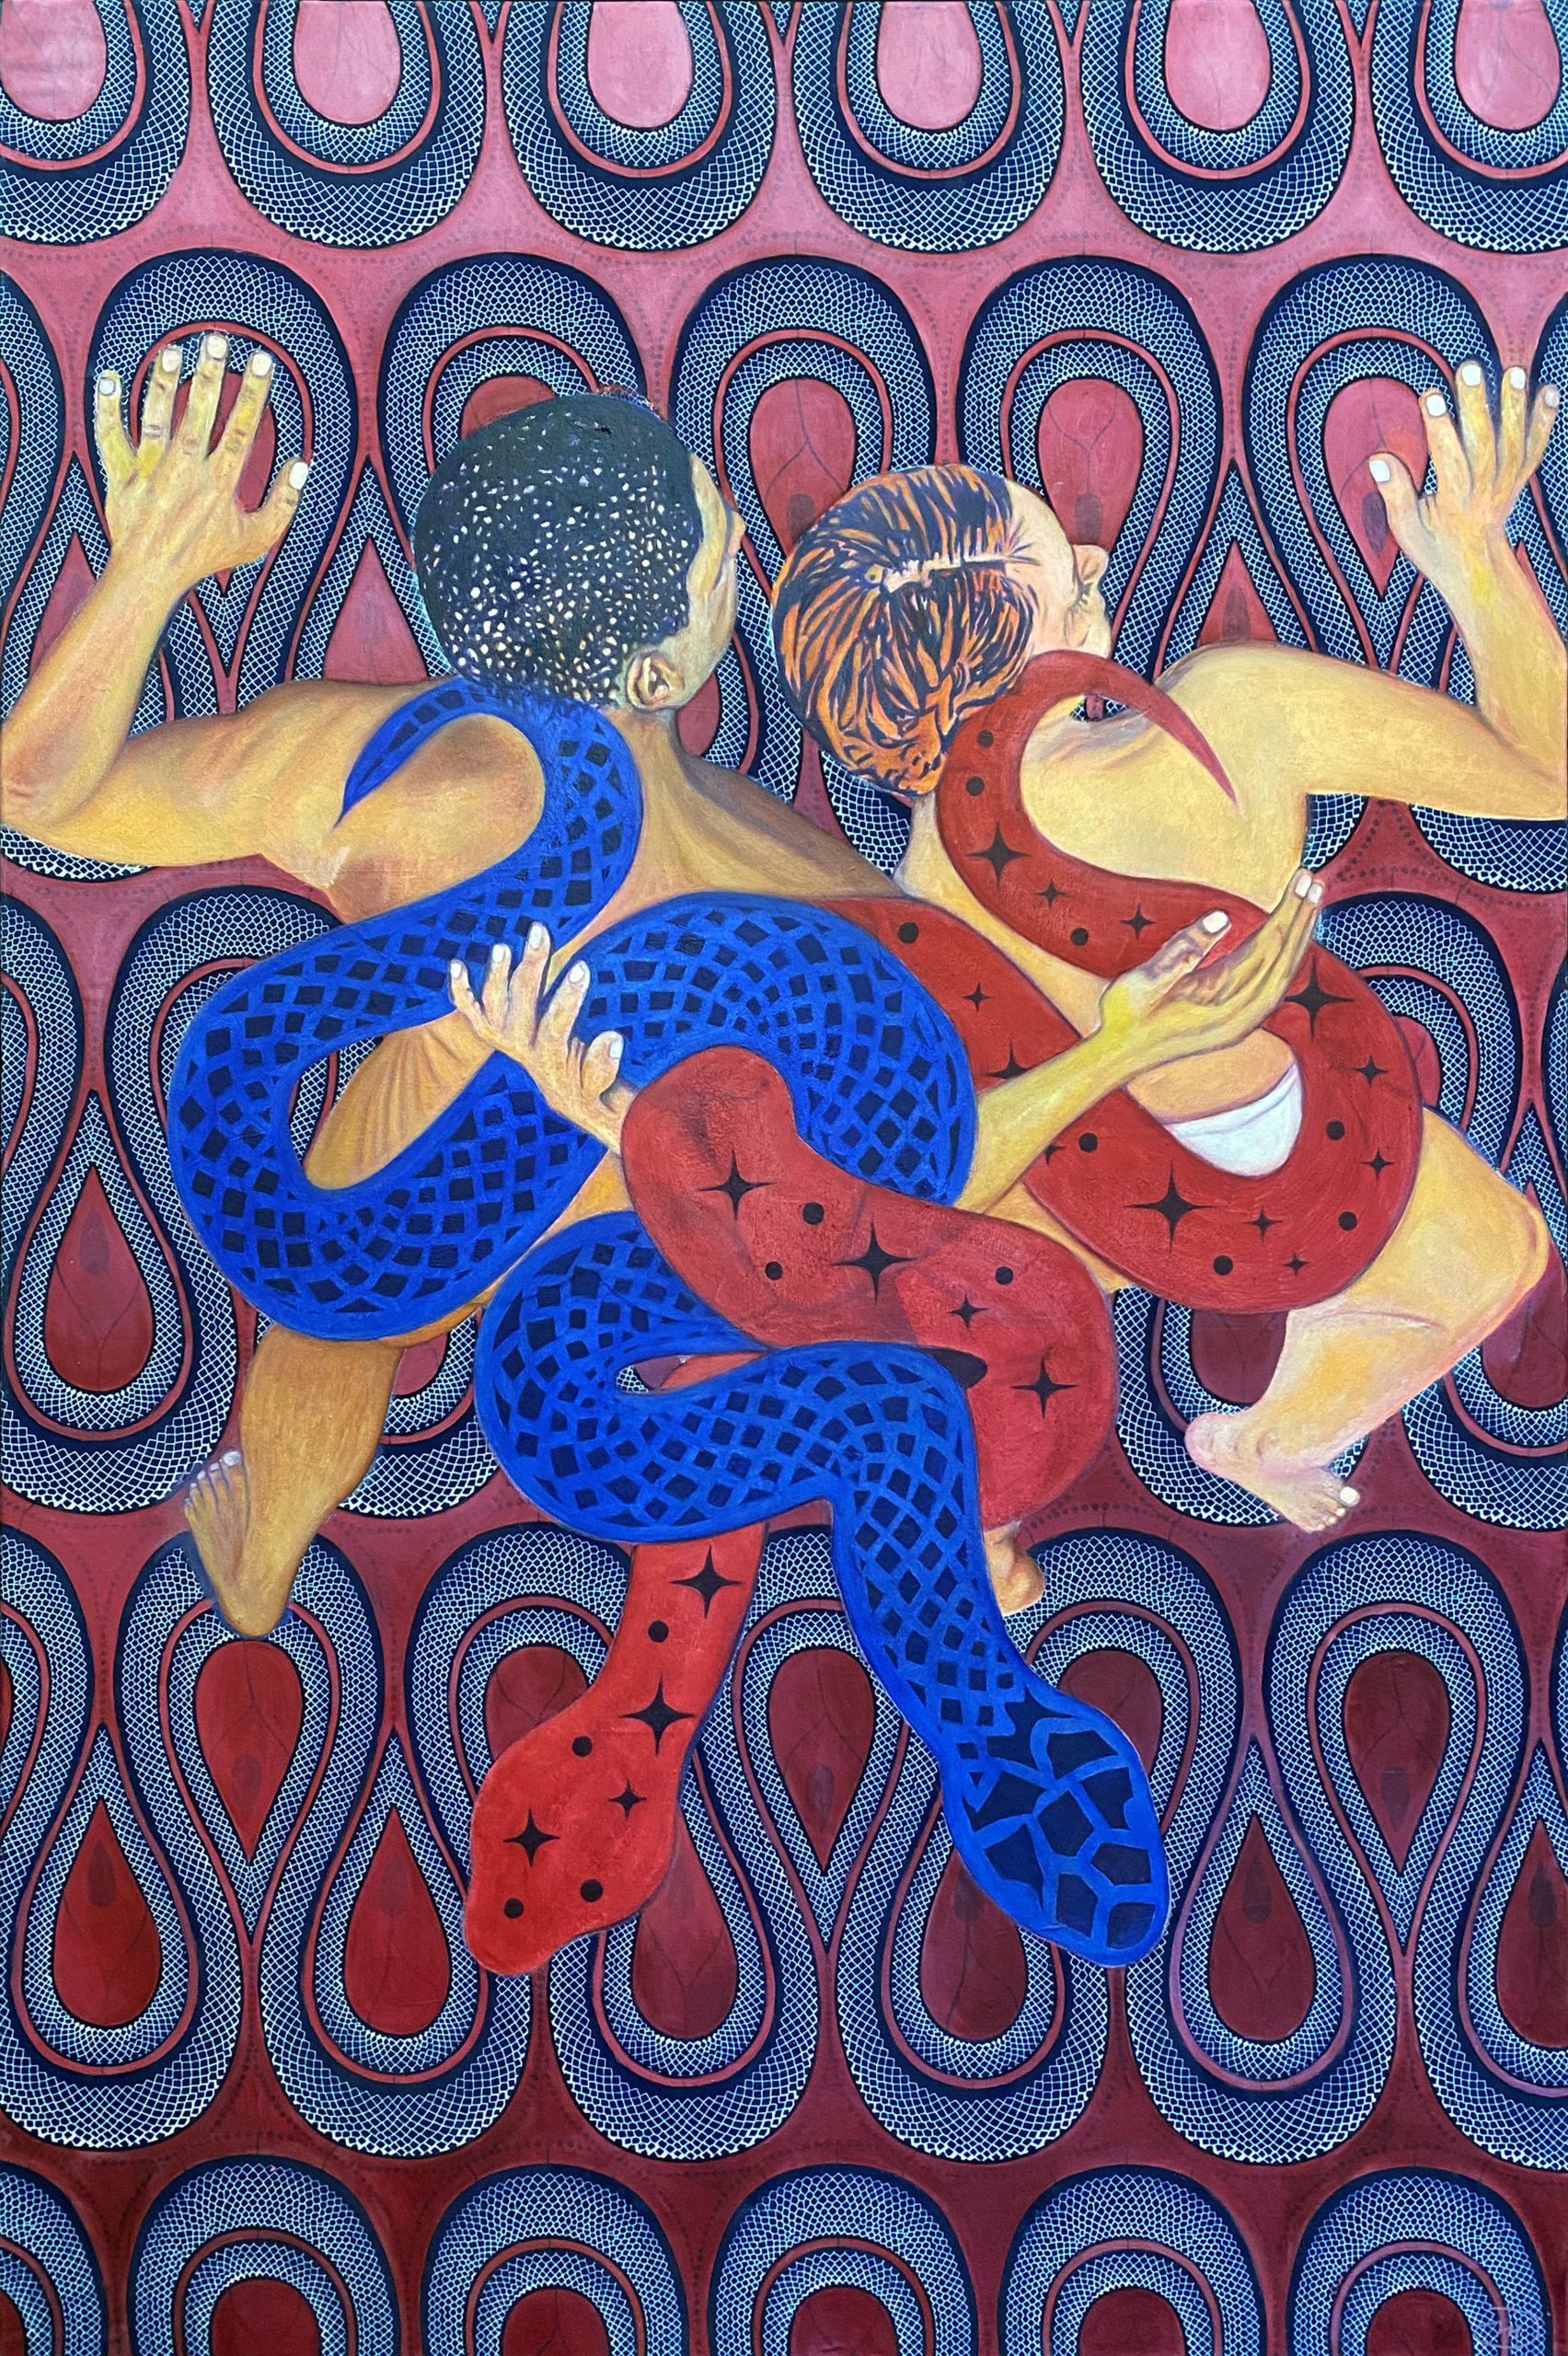 Ouroboros - Peinture contemporaine de Mael Denegri